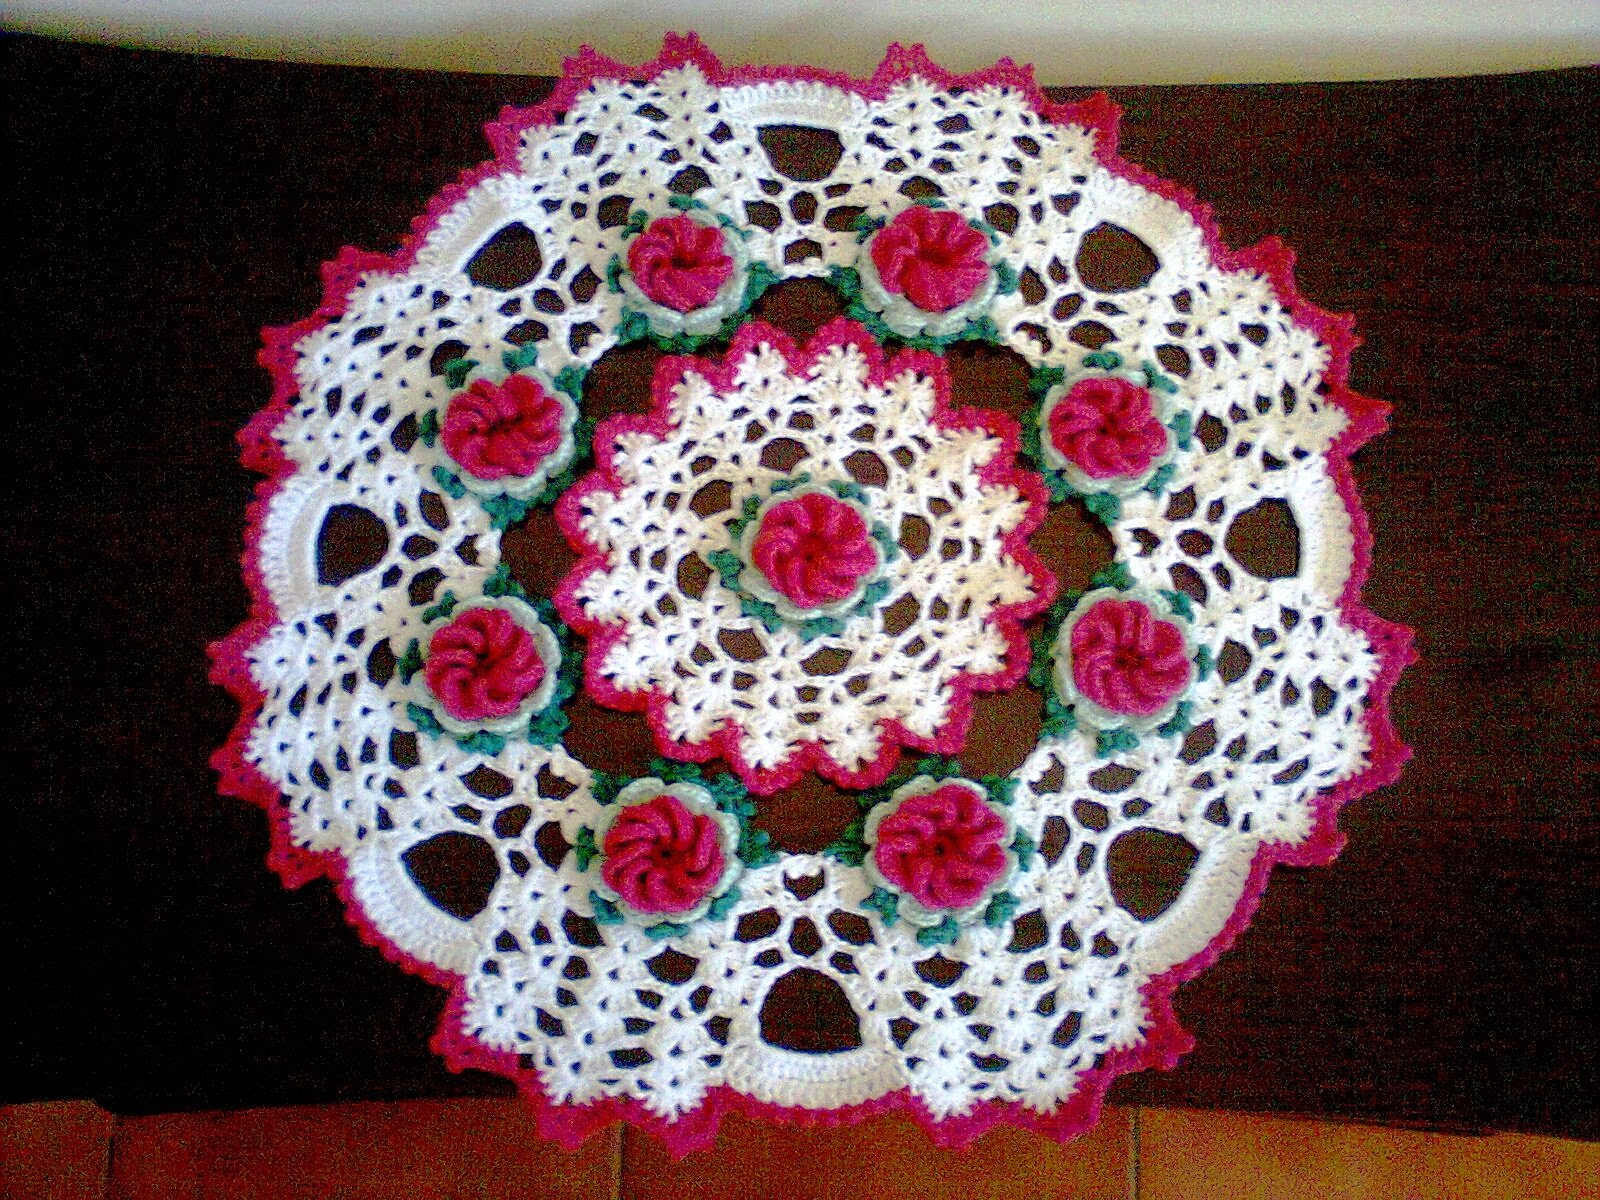 espiral usada para fazer flores de crochê em forma de caracol